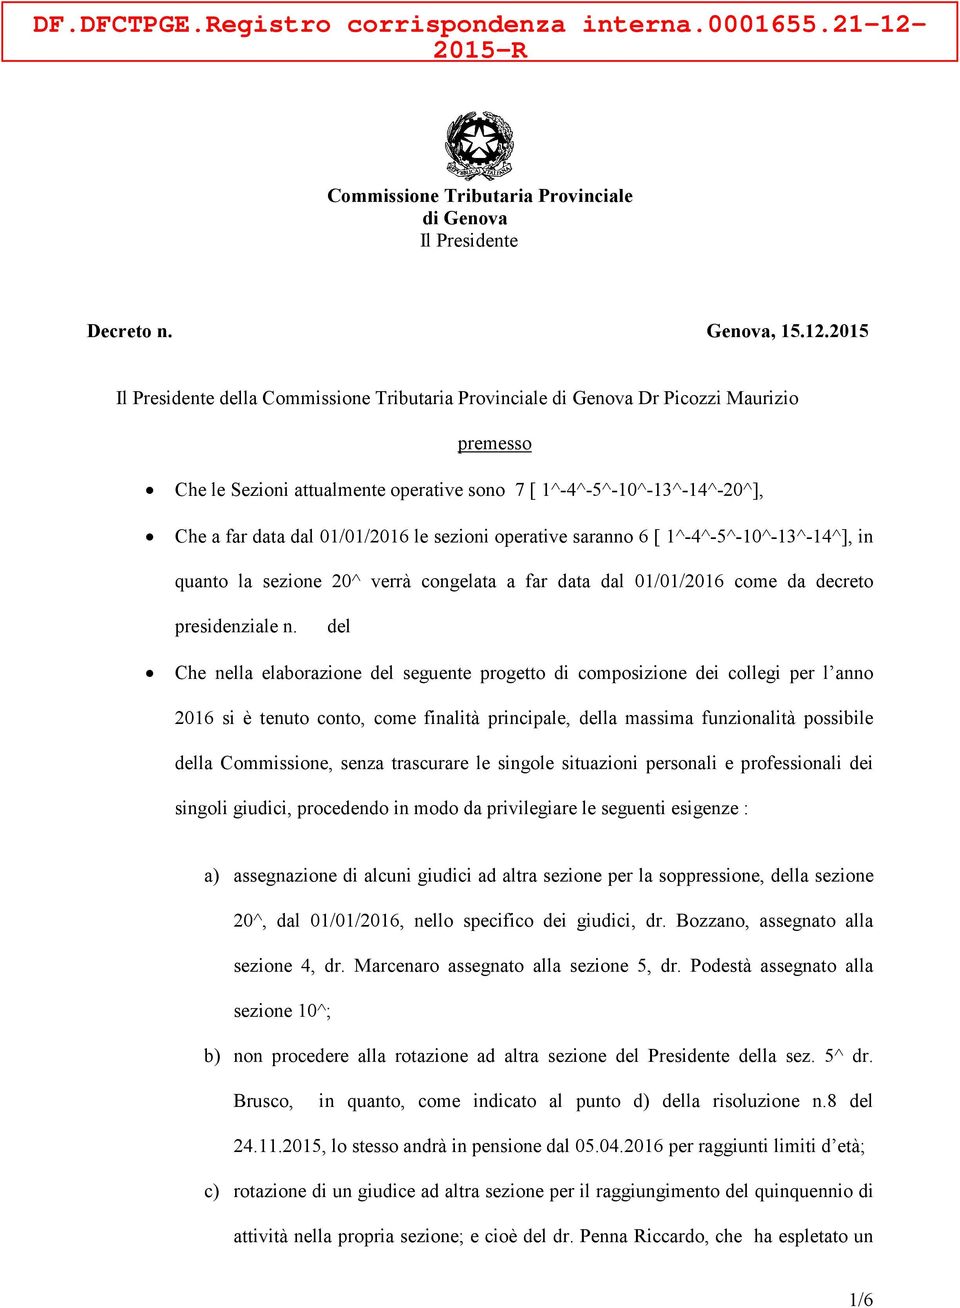 2015 Il della Commissione Tributaria Provinciale di Genova Dr Picozzi Maurizio premesso Che le Sezioni attualmente operative sono 7 [ 1^-4^-5^-10^-13^-14^-20^], Che a far data dal 01/01/2016 le